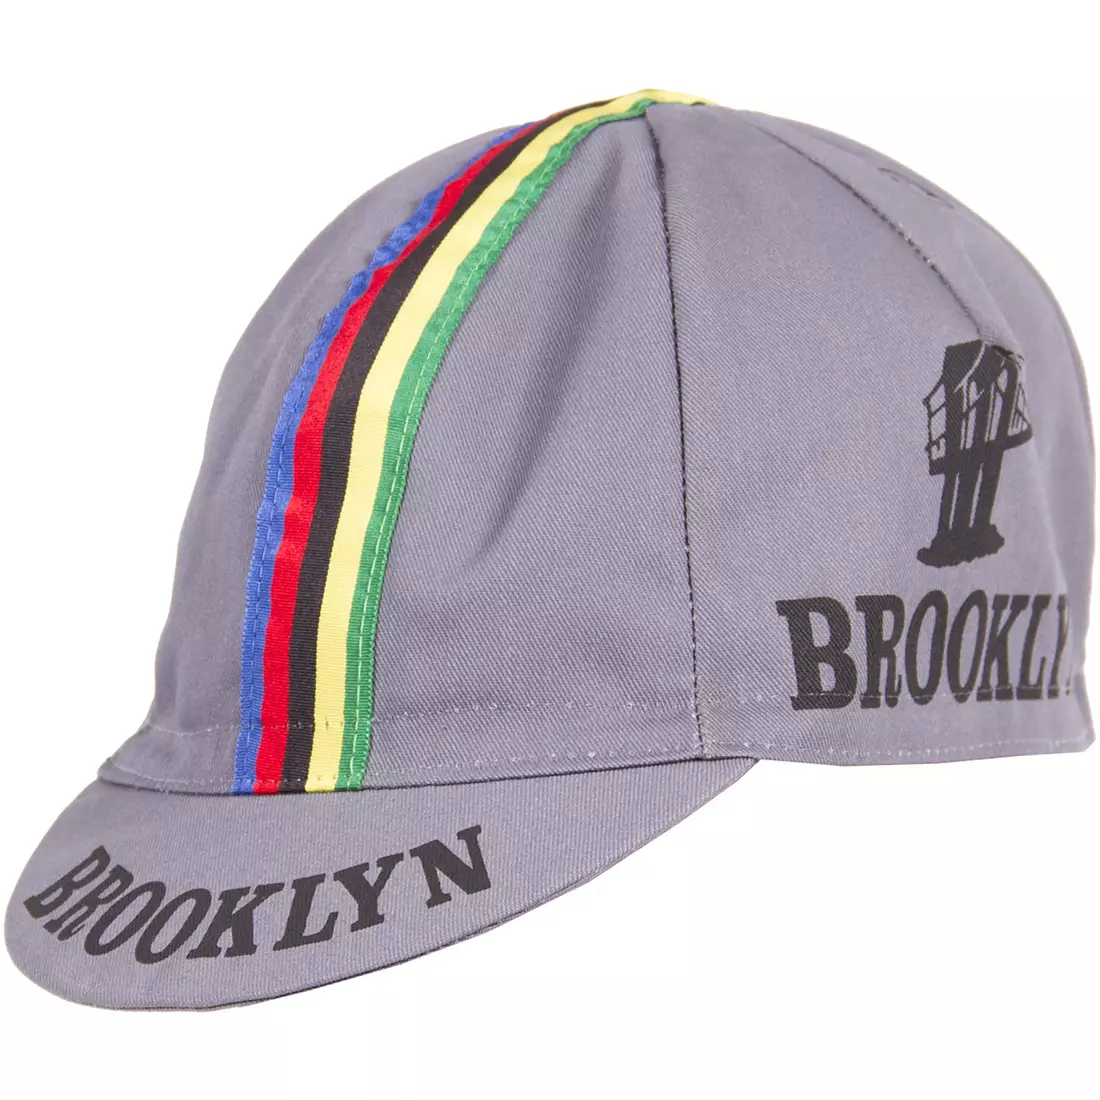 GIORDANA SS18 cycling cap - Brooklyn - Gray w/ Stripe tape GI-S6-COCA-BROK-GRAY one size